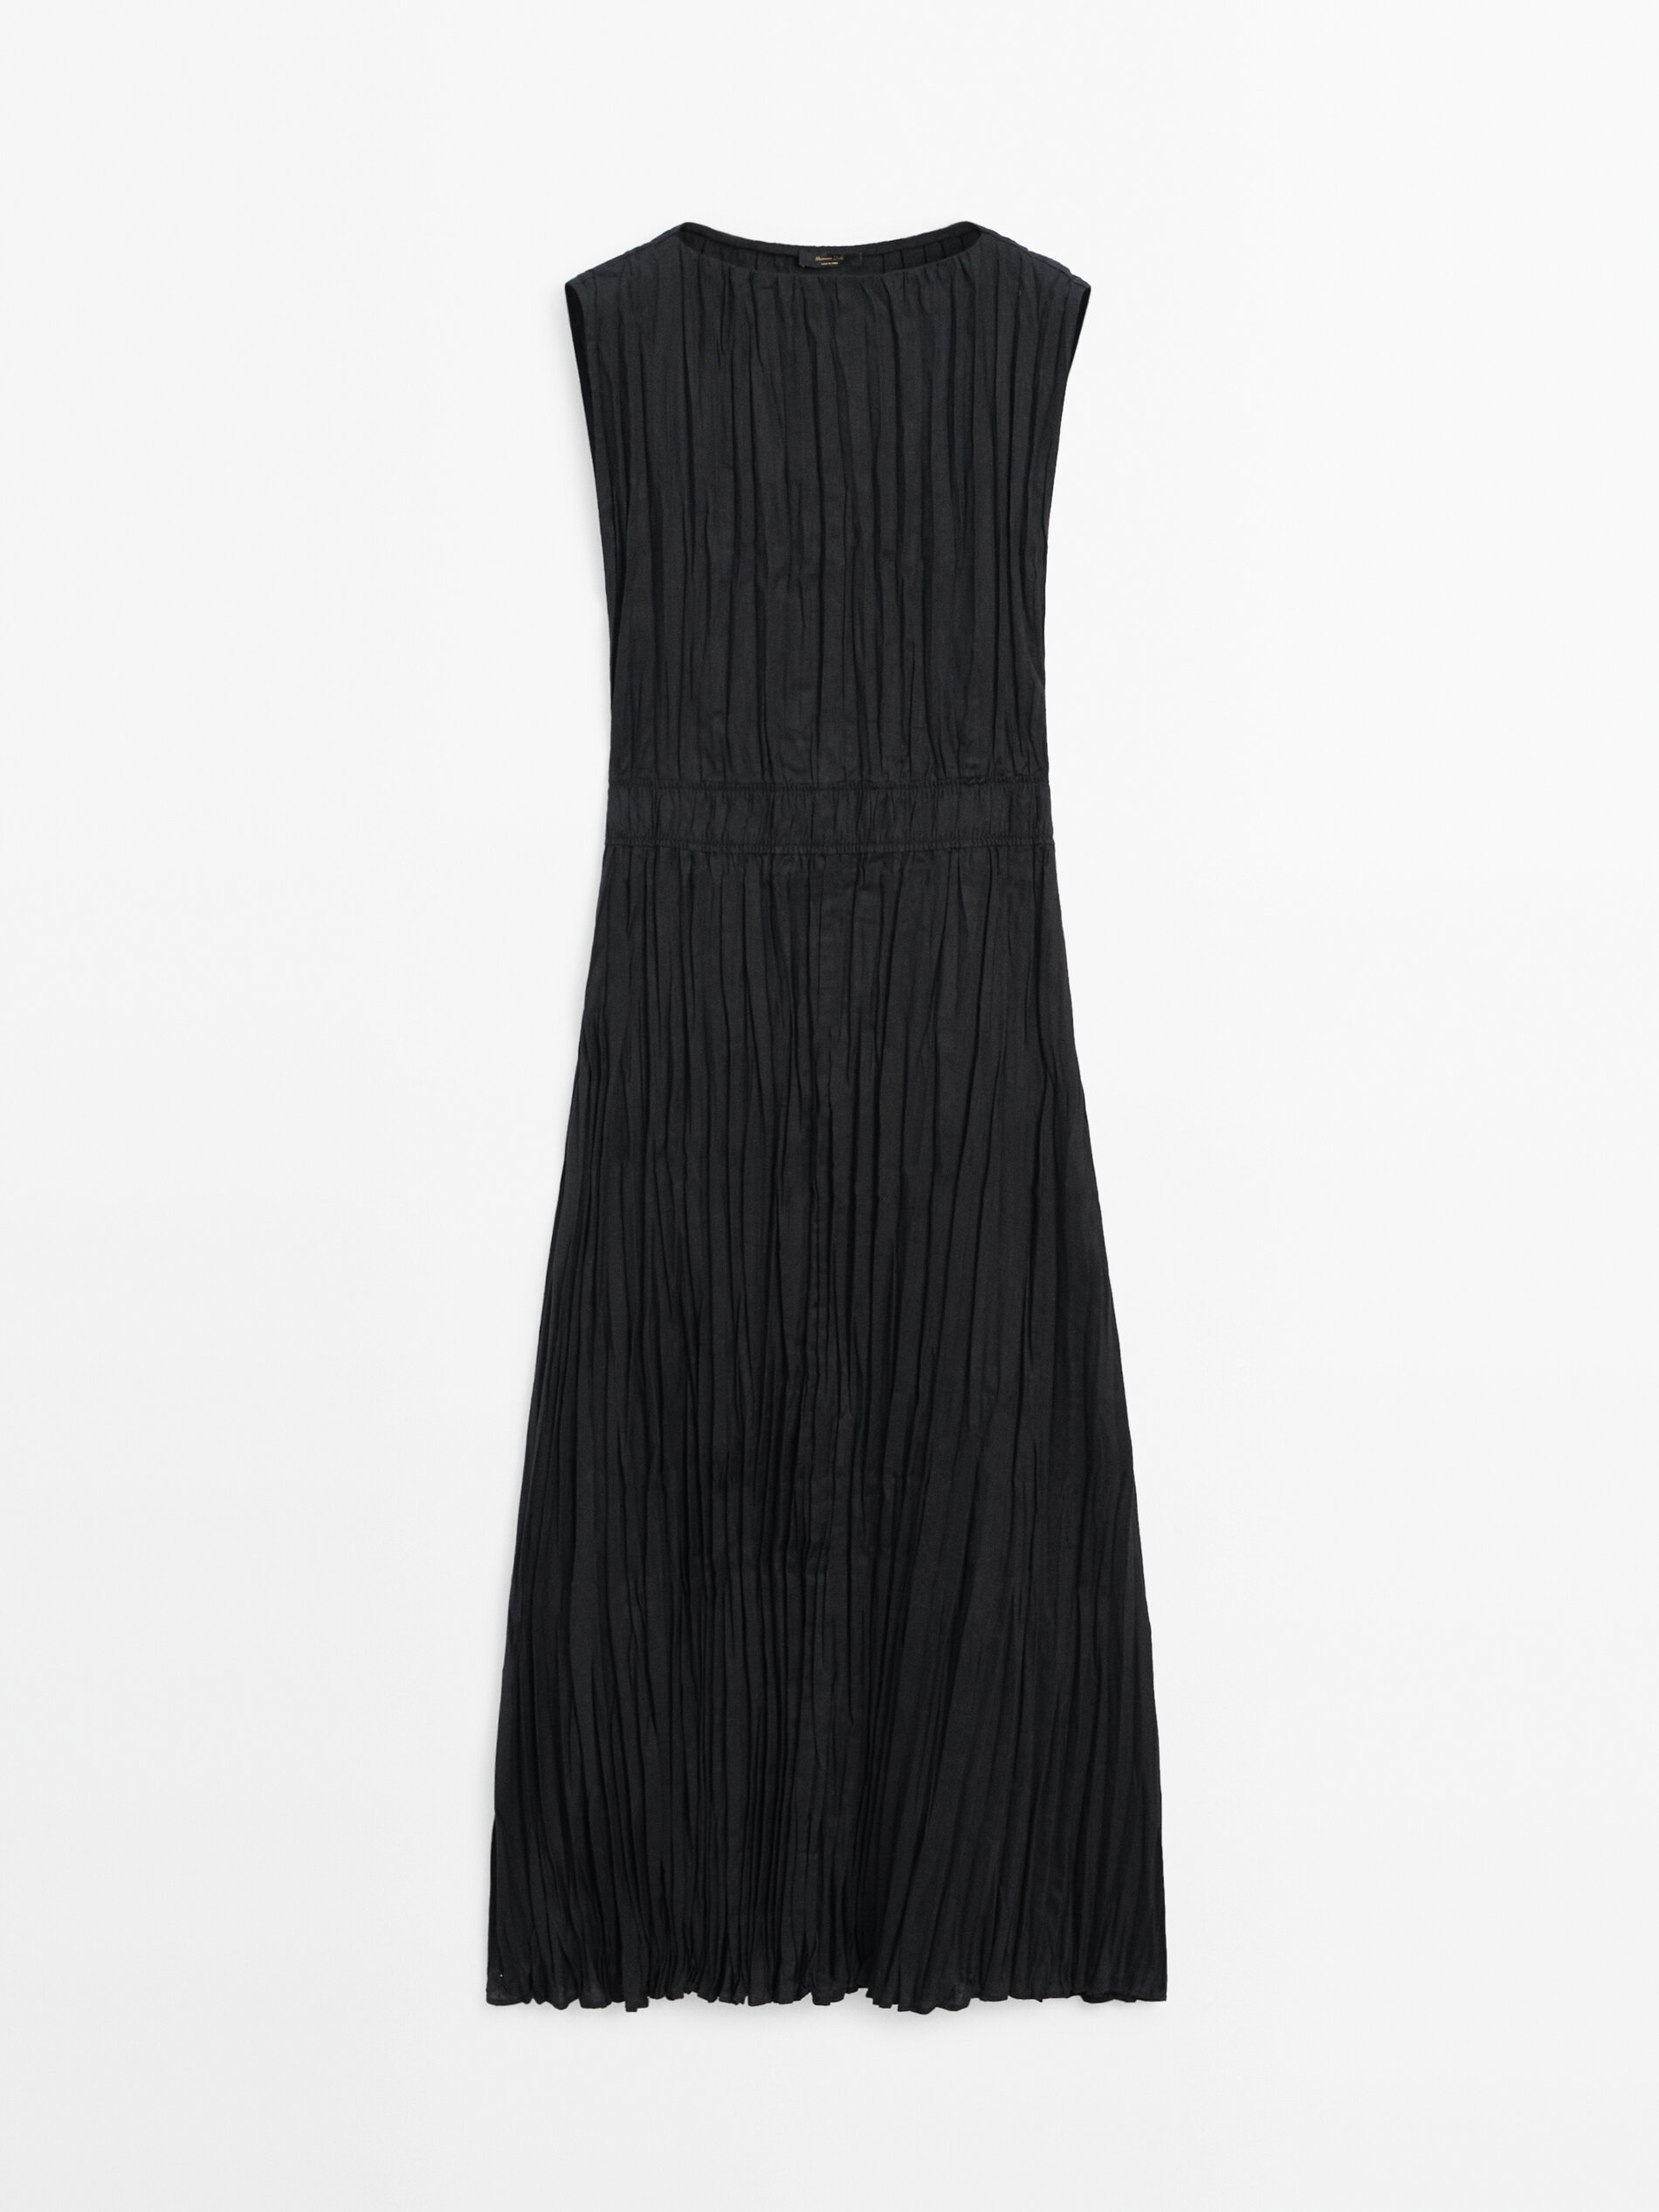 Renueva tu armario con el vestido midi plisado de Massimo Dutti que te har sentir fabulosa a los 60 aos